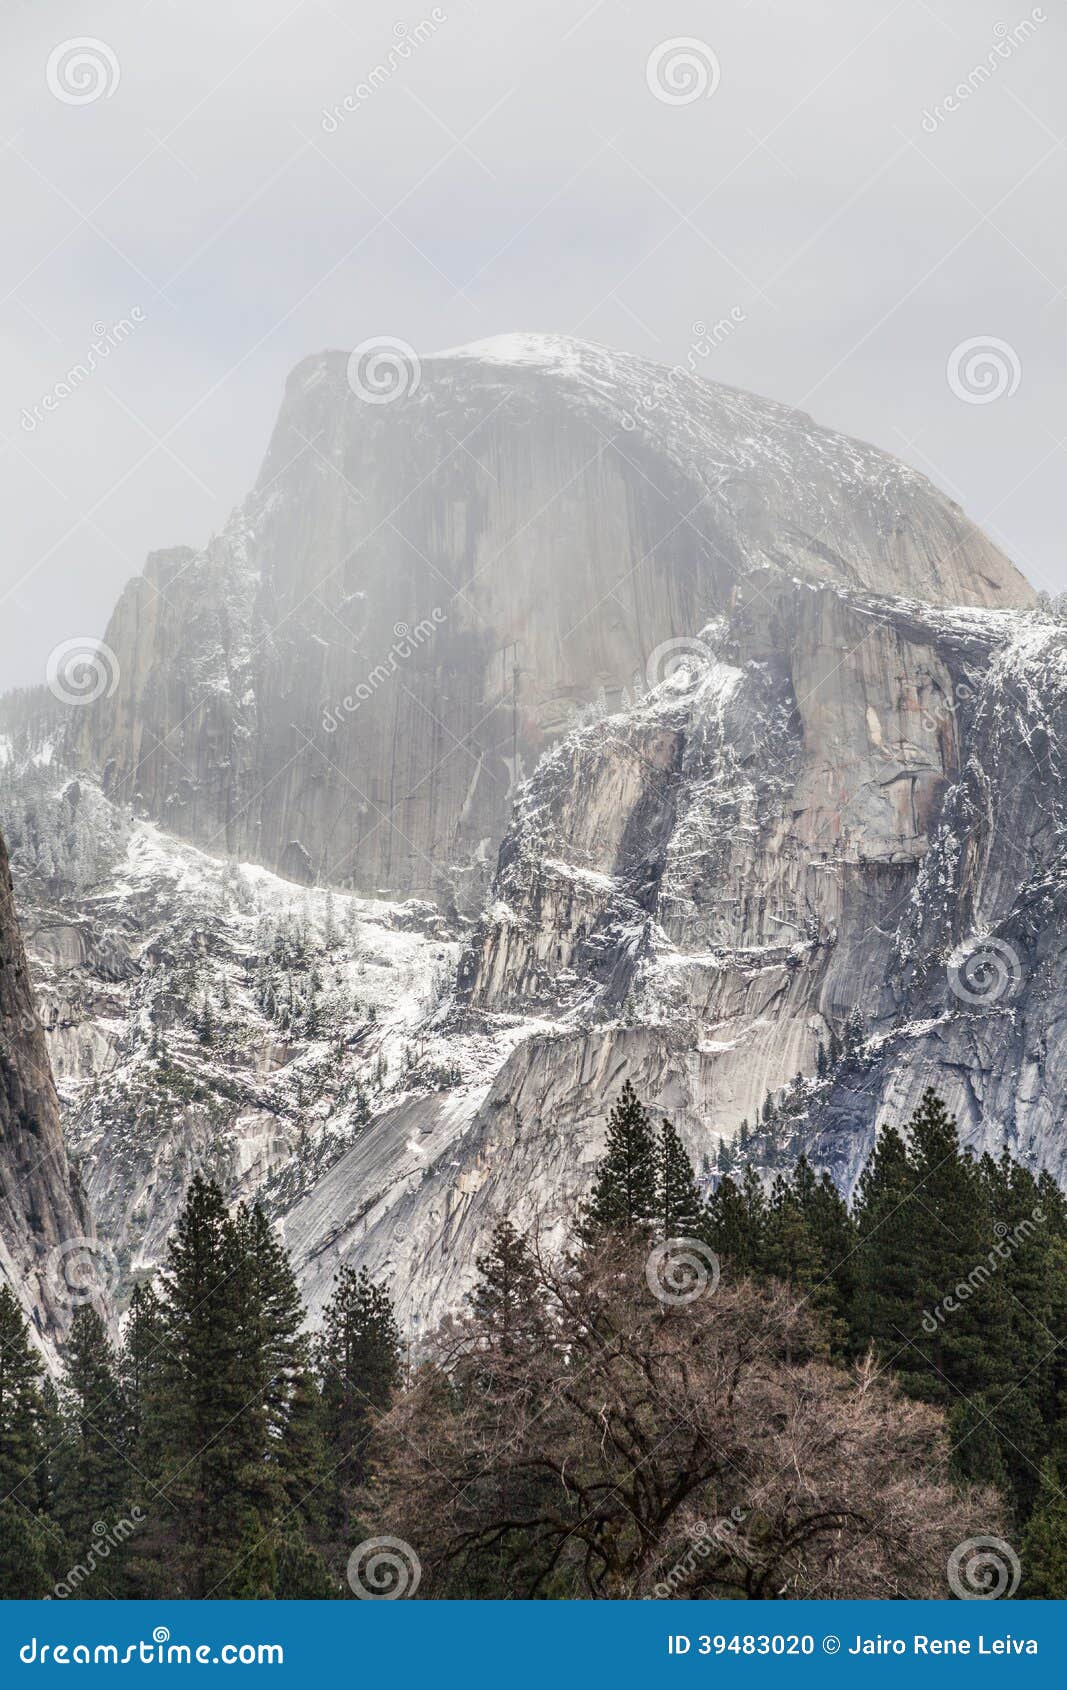 Halve Koepel en mist III. Yosemite Nationaal Park, granietklippen, rivieren, watervallen, koepels en het mooie die landschap door gletsjer wordt gevormd. A moet zien bestemming reizen.